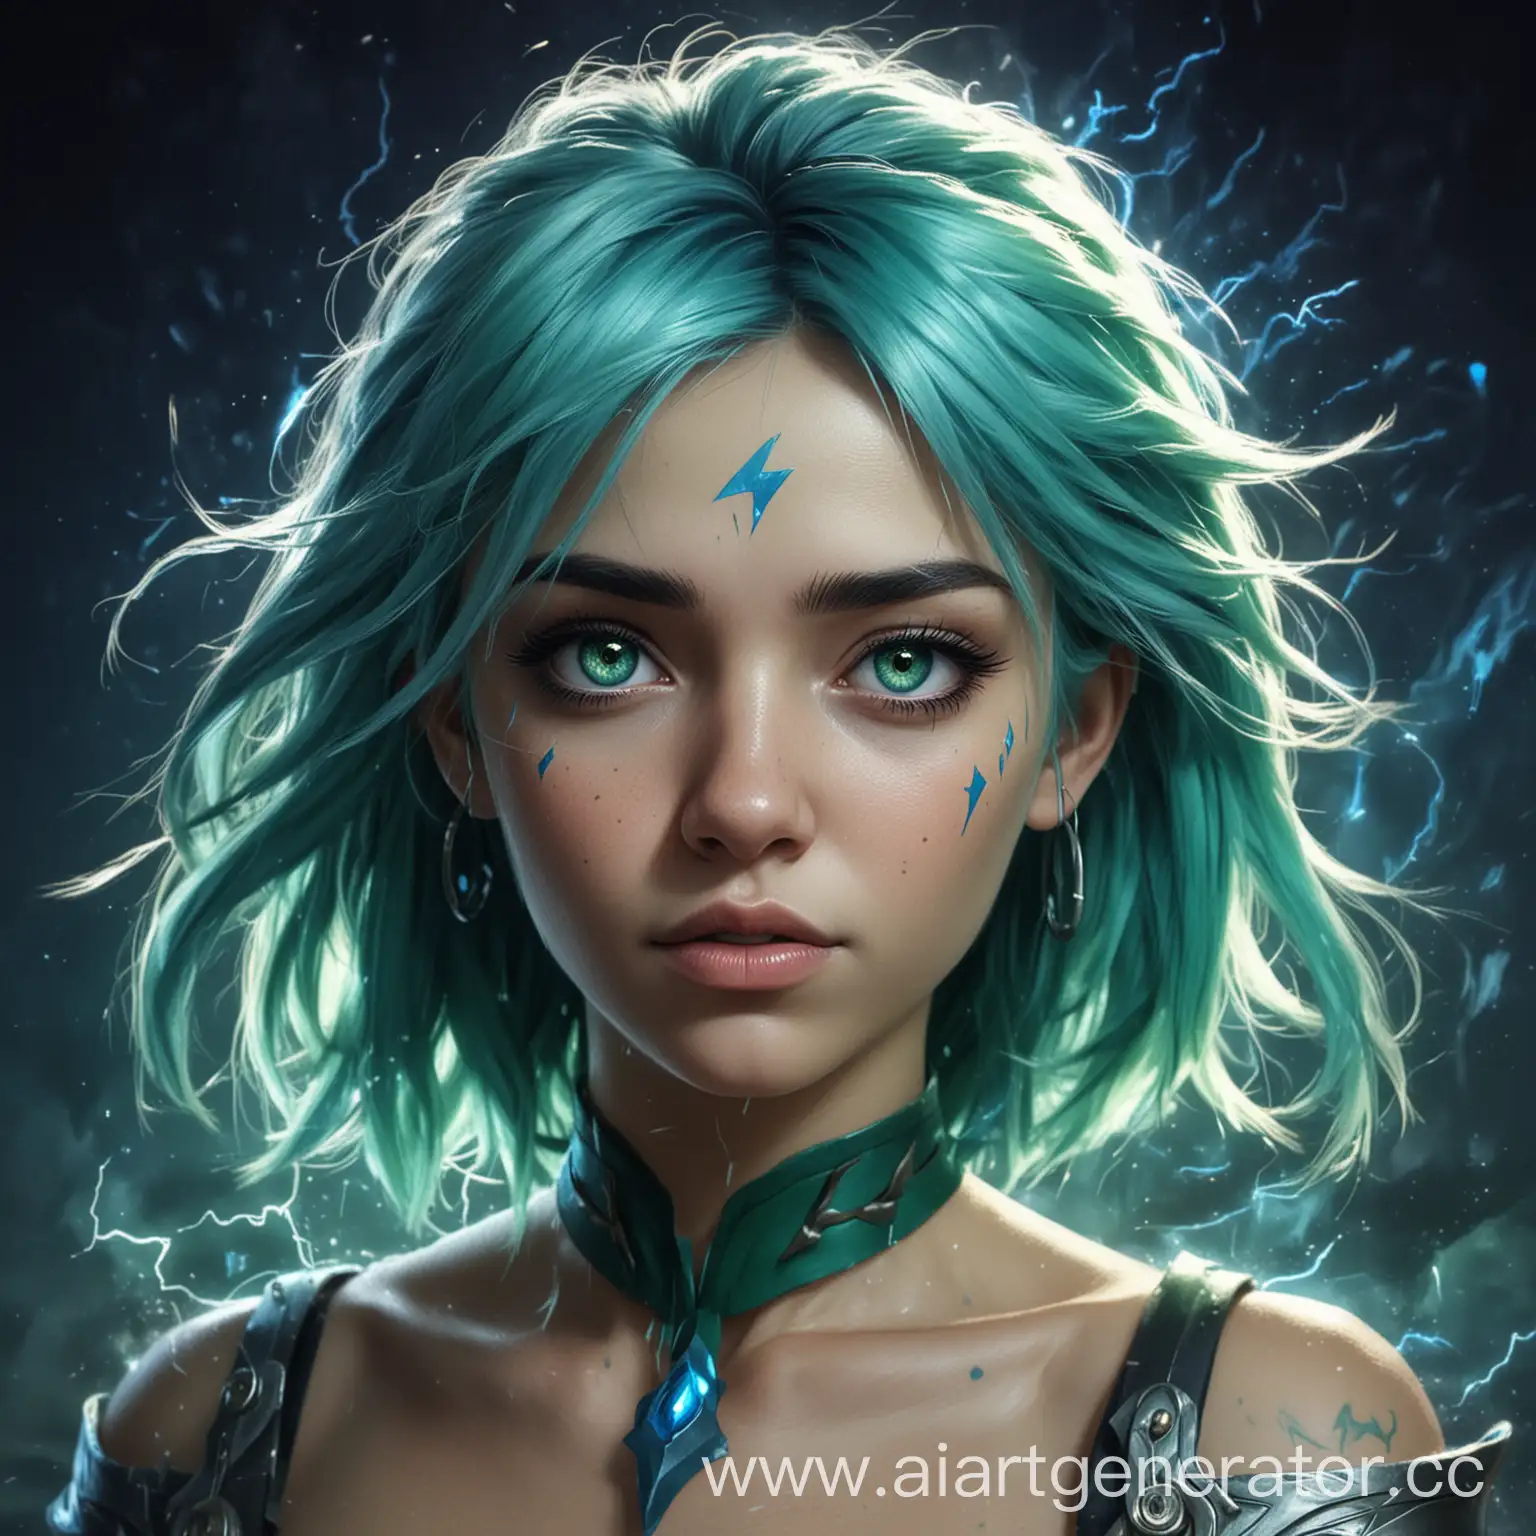 Dota-2-Style-Portrait-of-Lightning-Commandress-Girl-with-Blue-or-Green-Hair